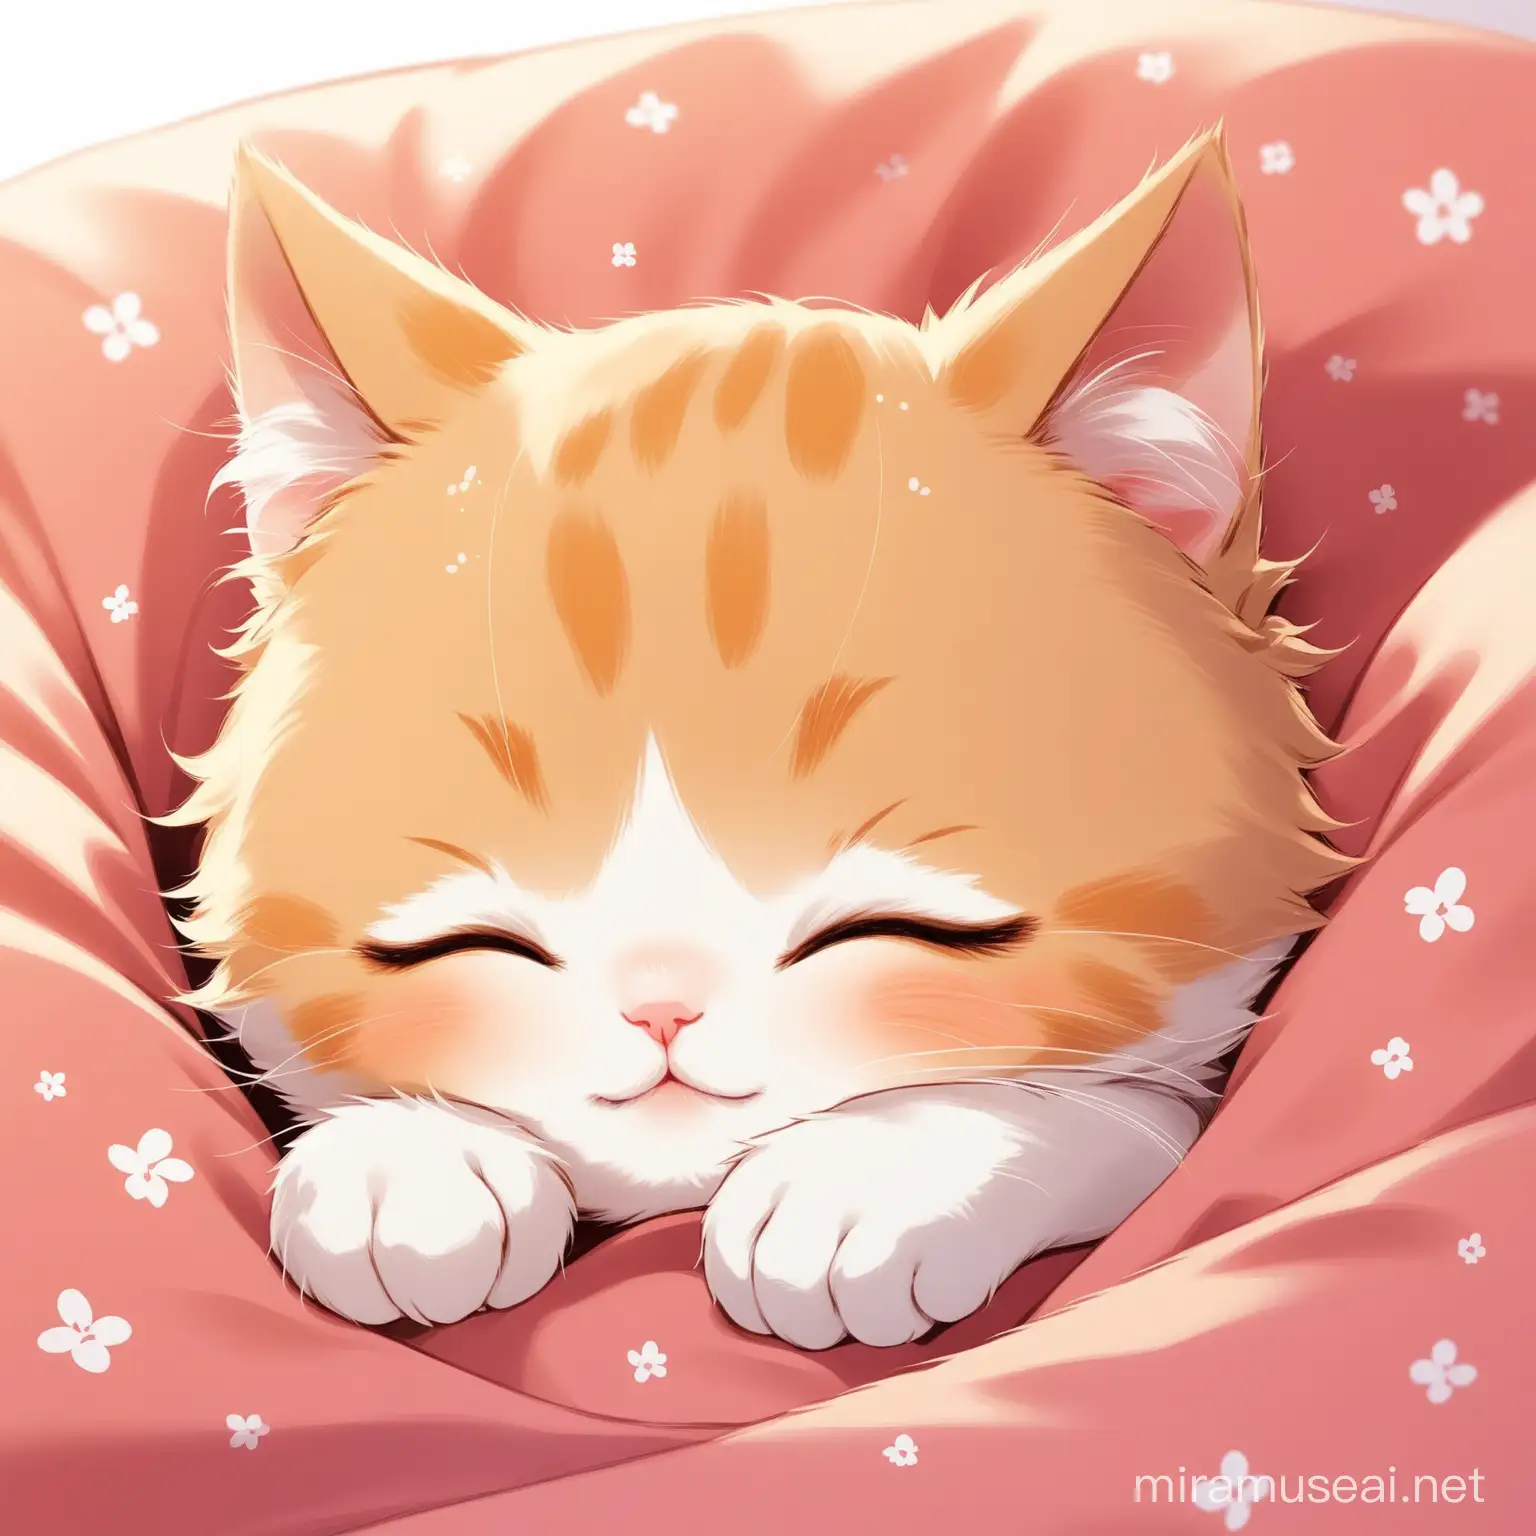 Adorable Sleeping Kitten in Cozy Bed